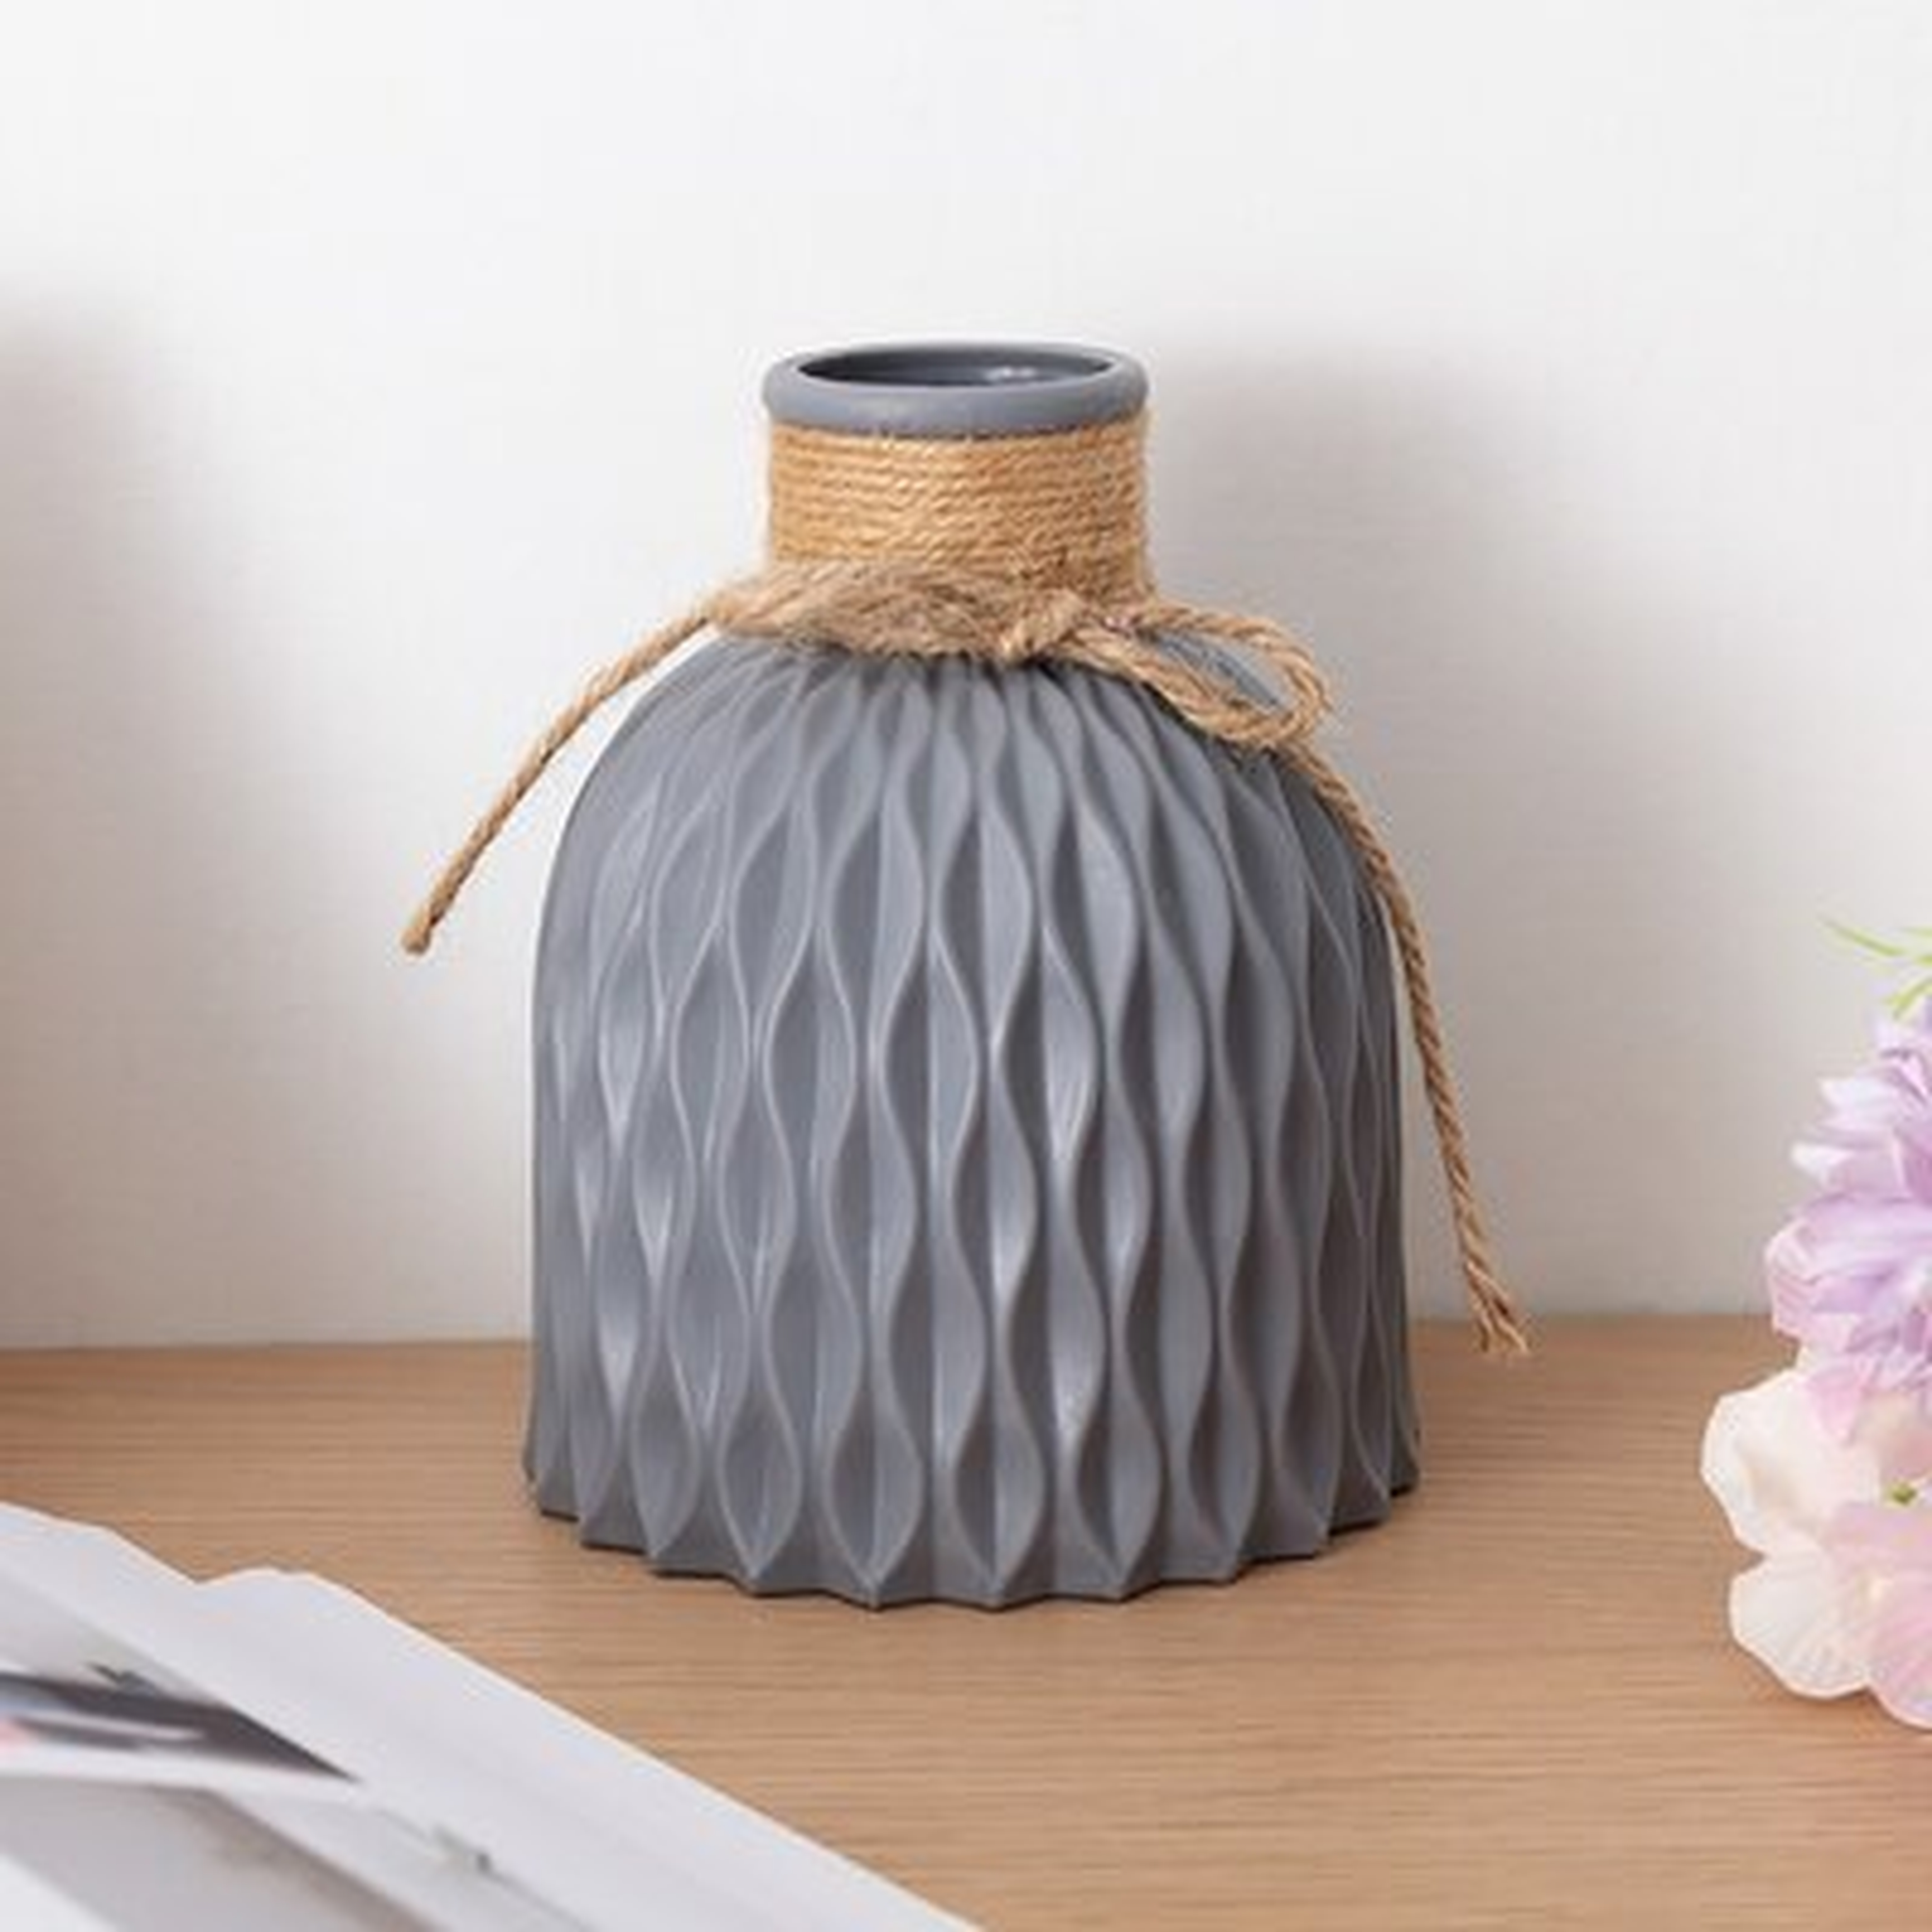 Faux Ceramic Vase — Decorative Vases For Flowers & House Plants — Cute, Beautiful Home Decor - Wayfair